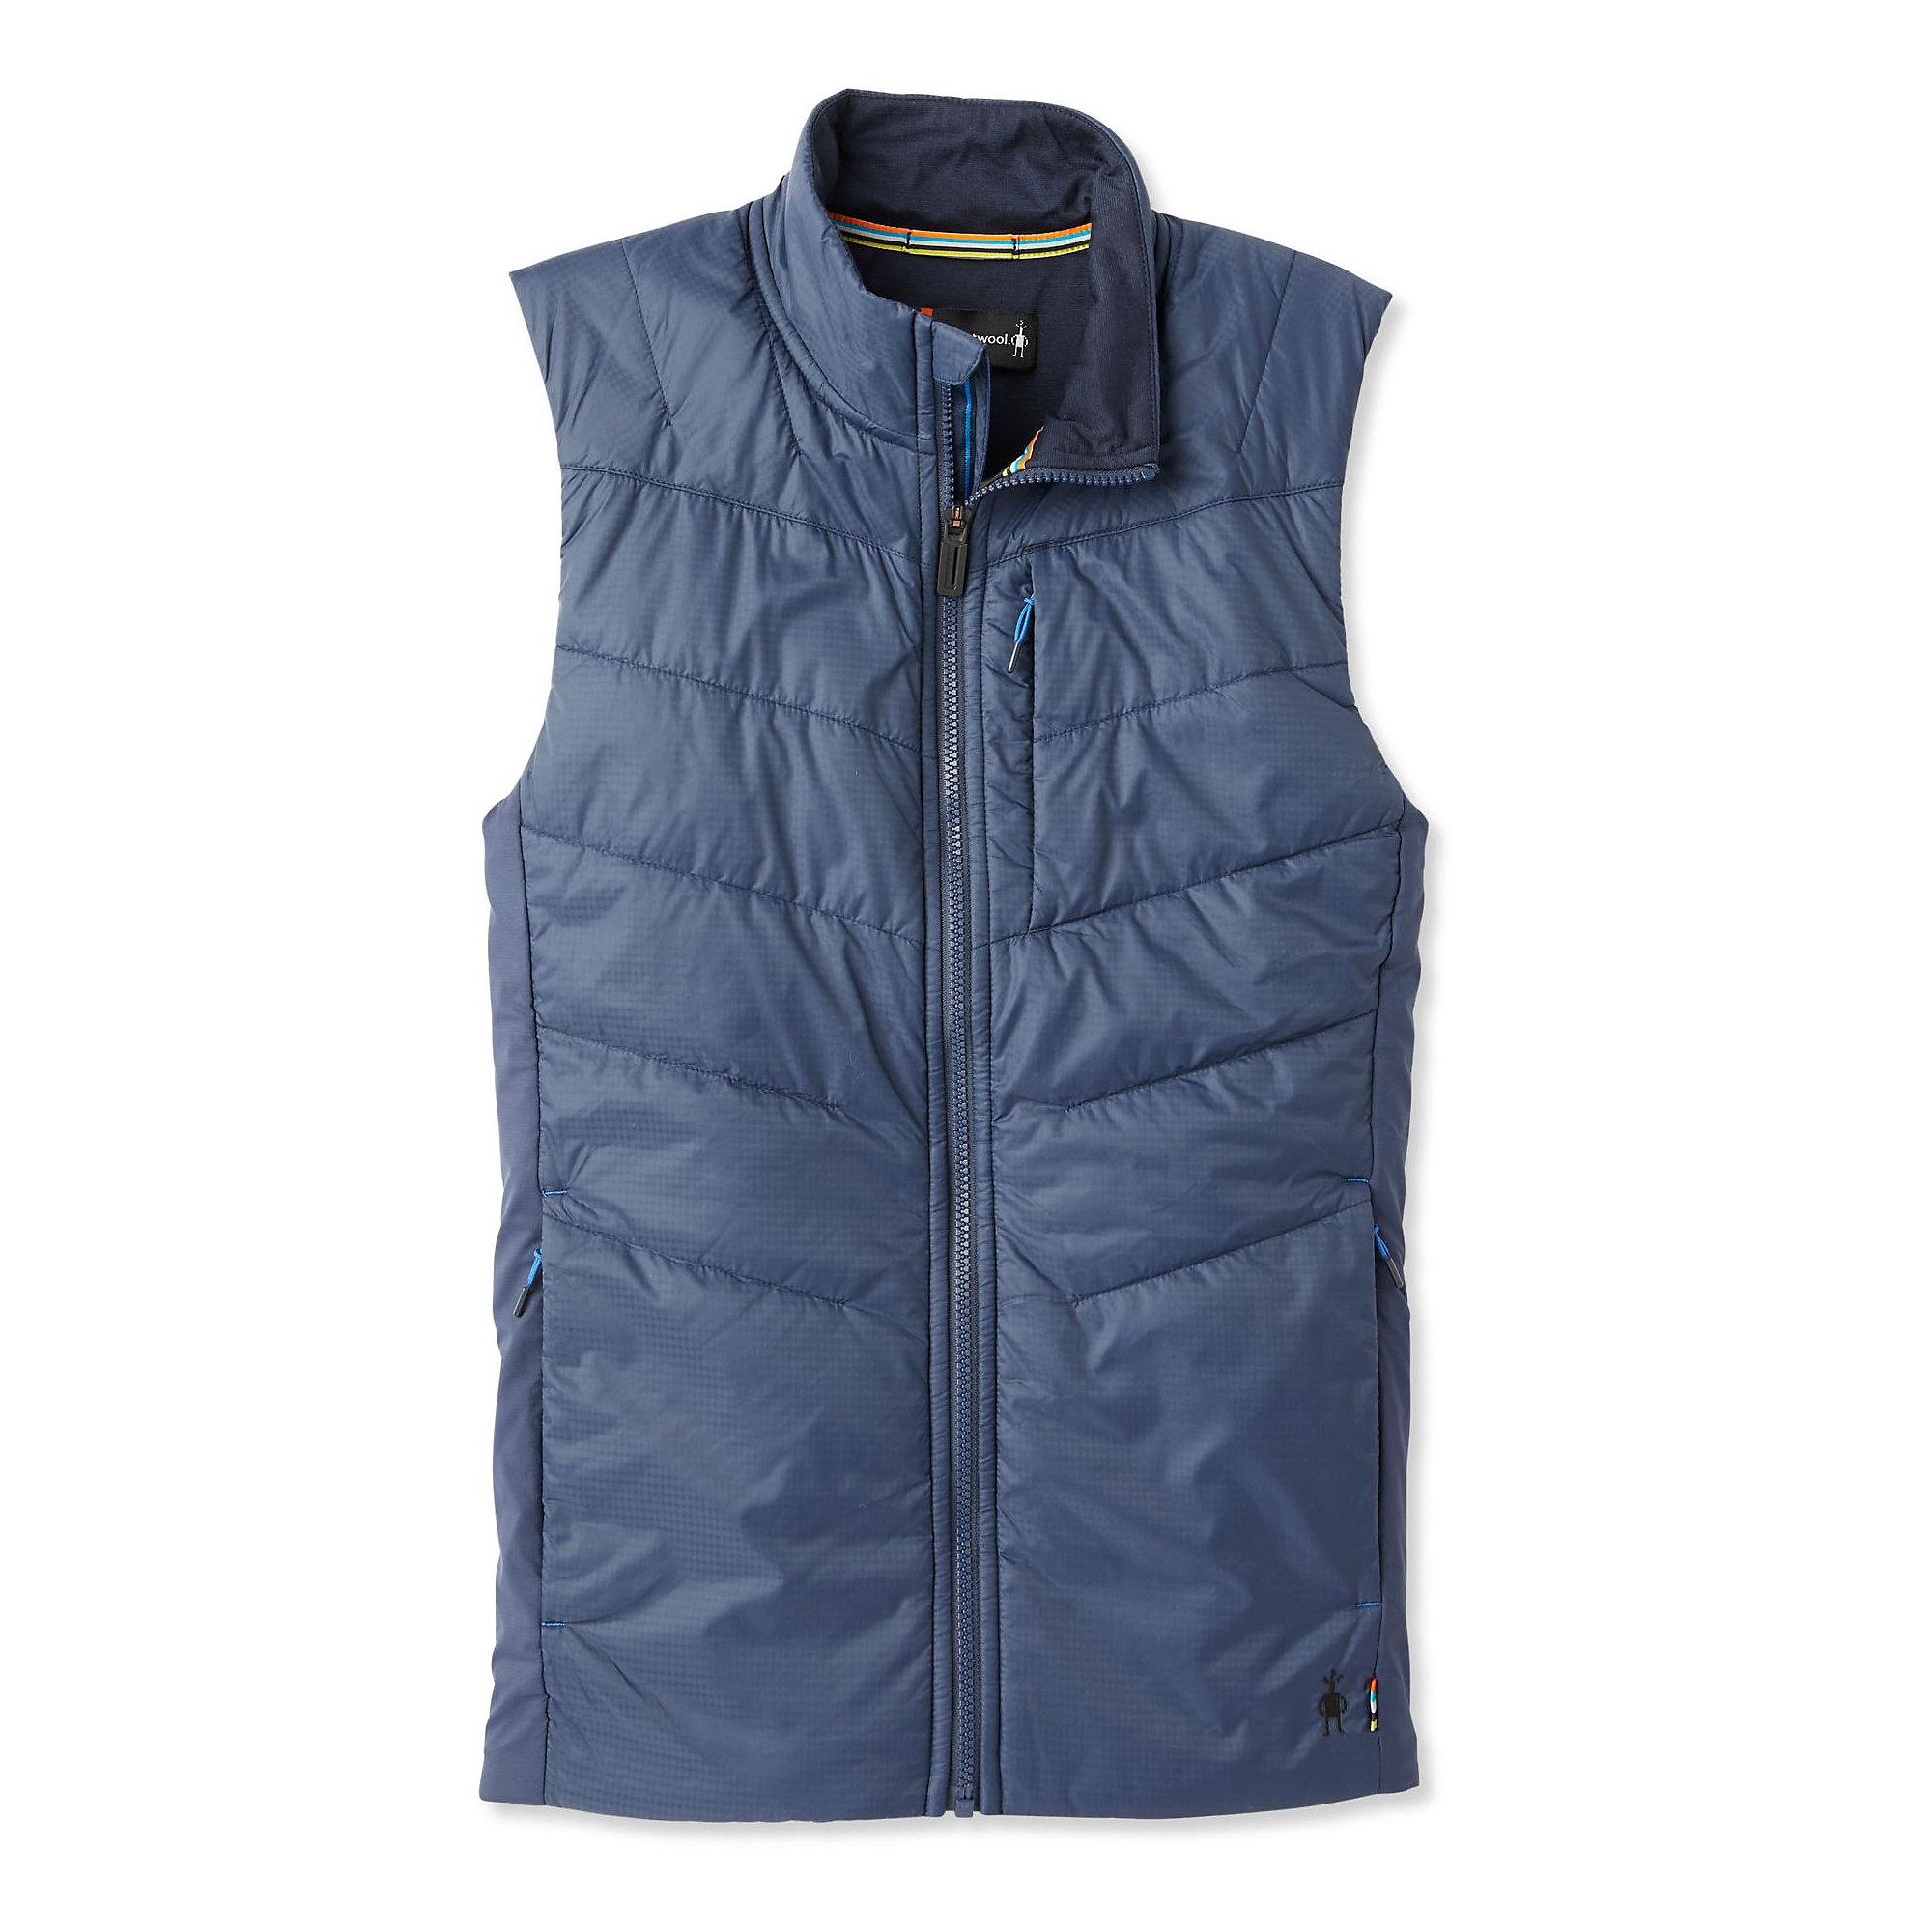 Smartwool Wool Smartloft-x 60 Vest in Deep Navy (Blue) for Men - Save ...